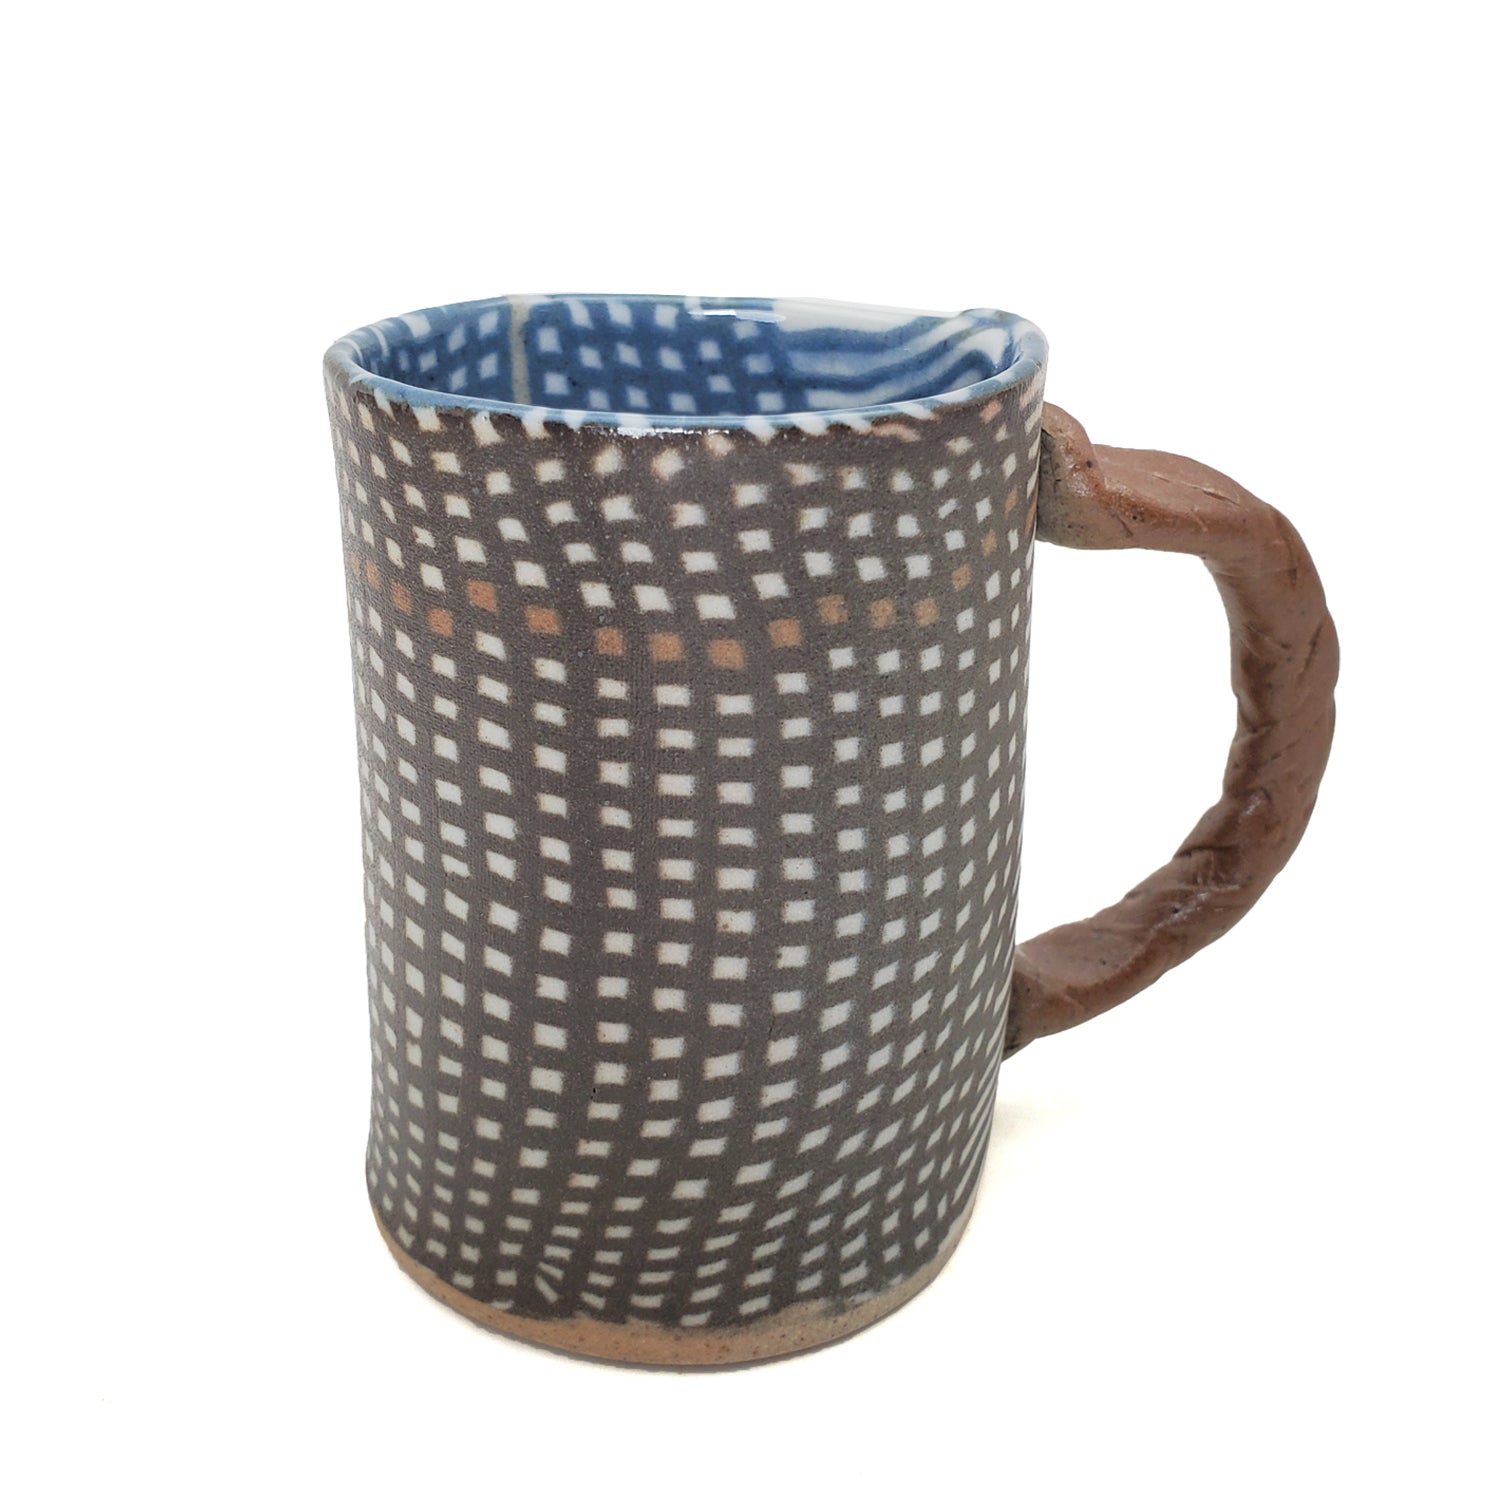 Mug, Teacup, or Demitassee - Net